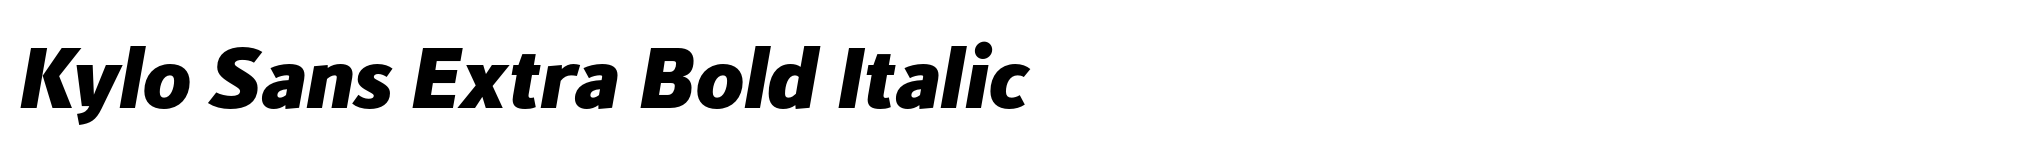 Kylo Sans Extra Bold Italic image